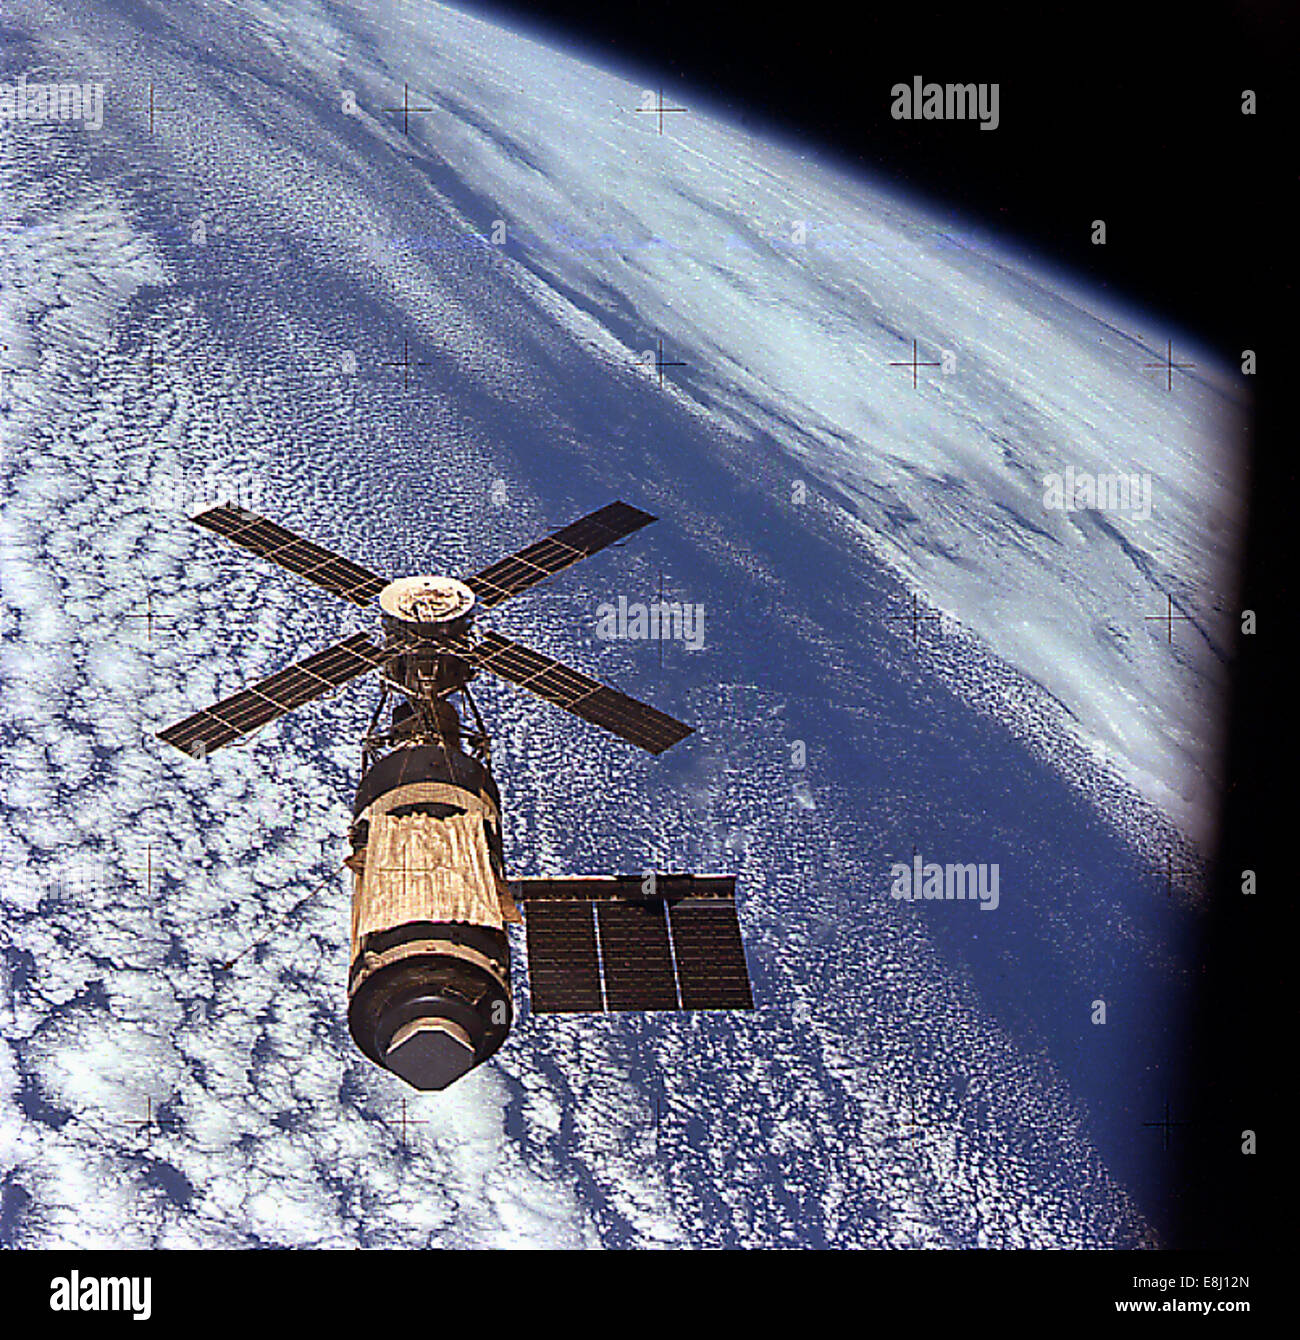 REF: JSC-SL4-143-4704 Skylab In Orbit,Cluster Skylab in Orbit Stock Photo